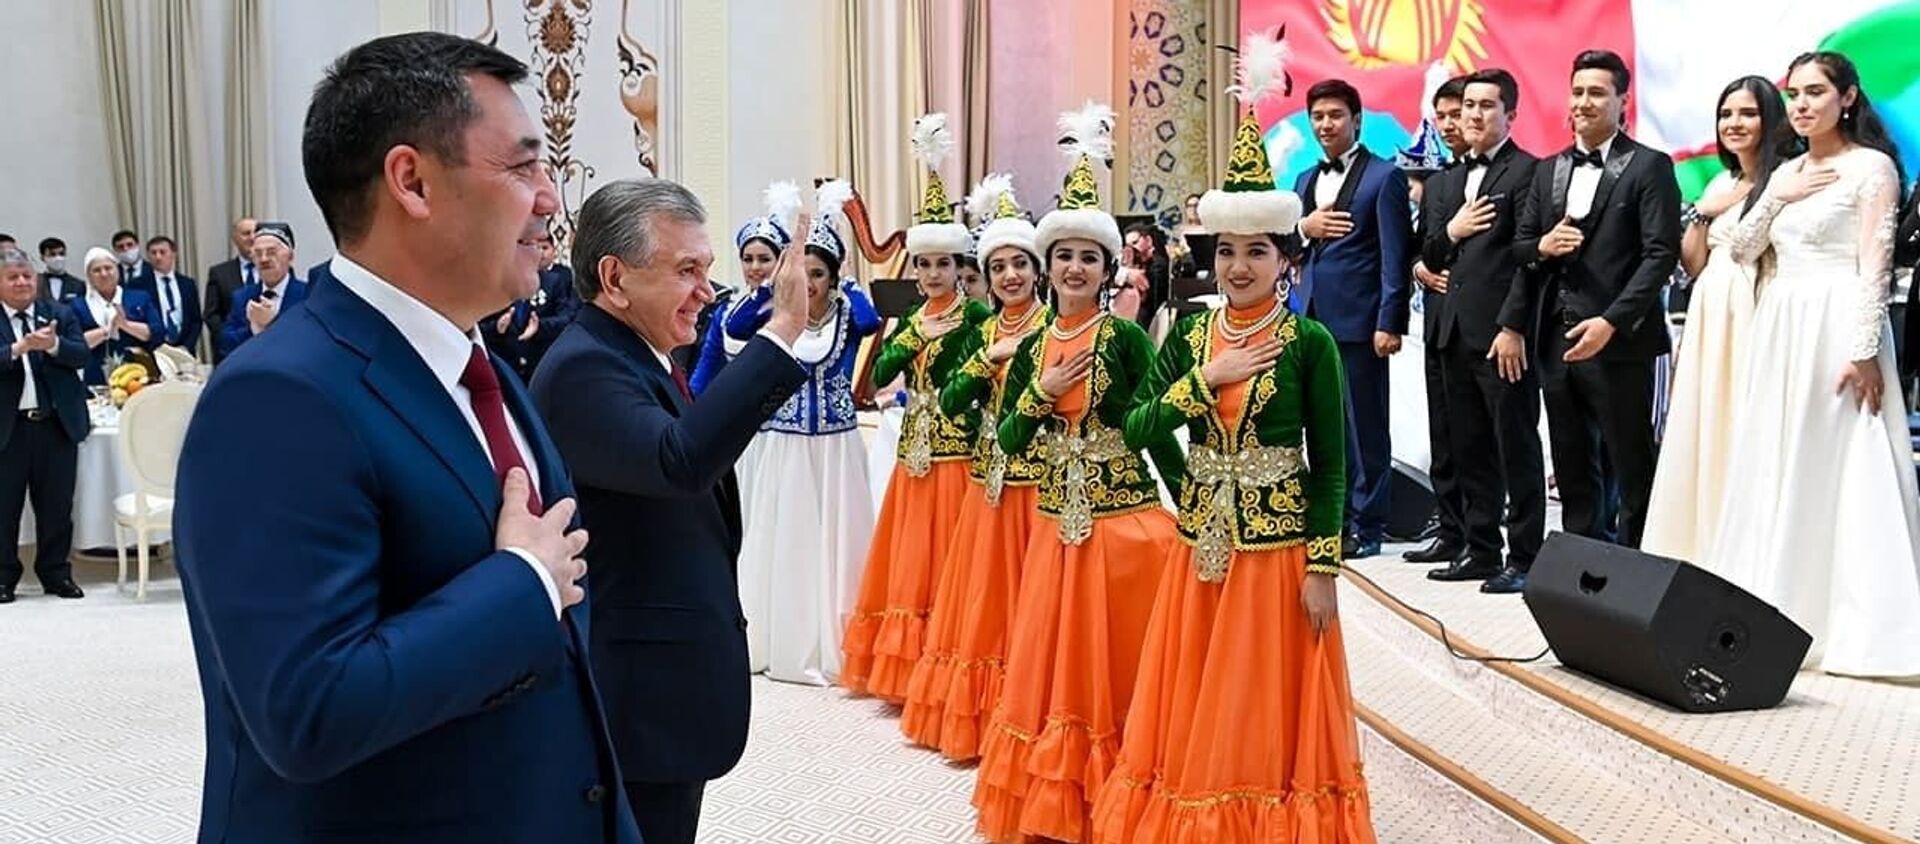 Президент Узбекистана Шавкат Мирзиёев устроил официальный прием в честь визита президента Кыргызстана Садыра Жапарова - Sputnik Кыргызстан, 1920, 12.03.2021